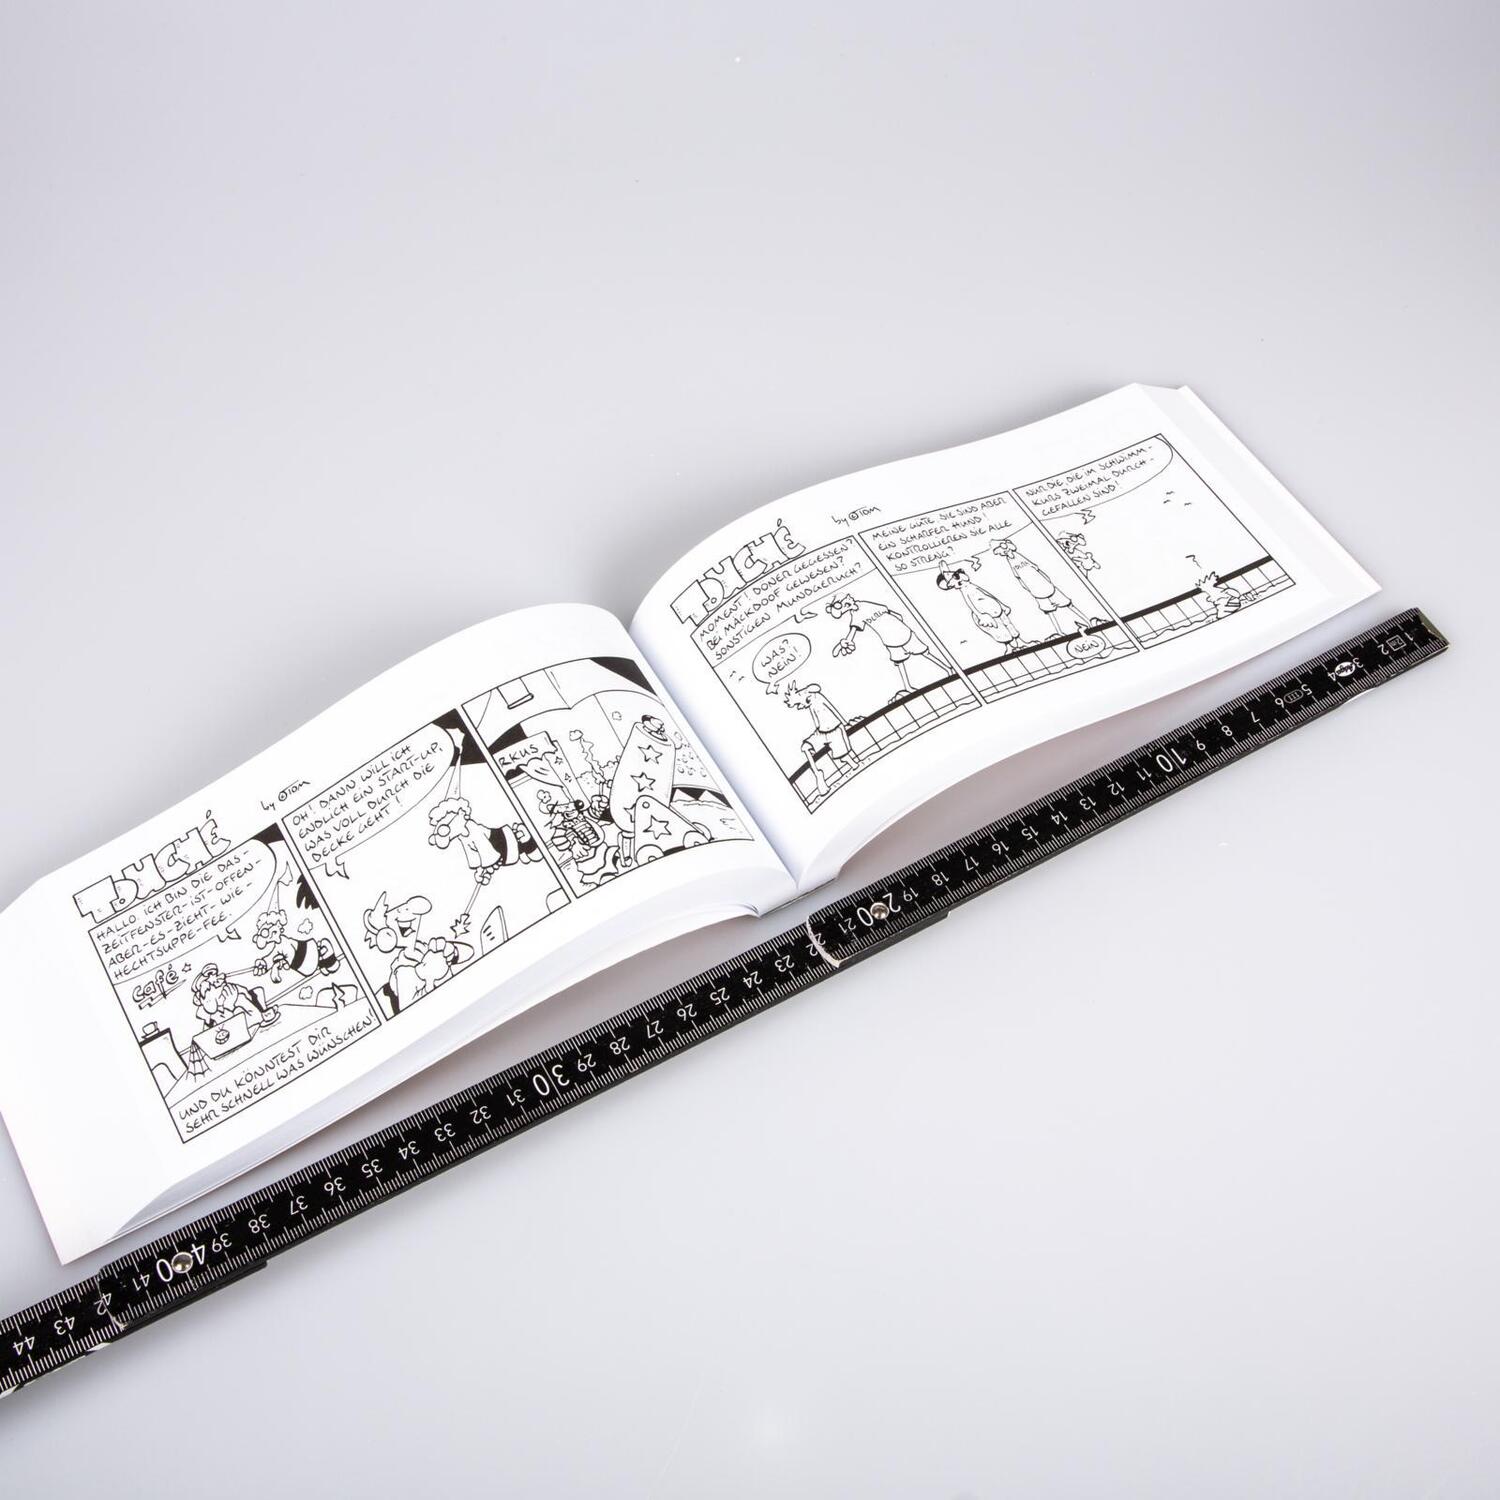 Bild: 9783830380450 | TOM Touché 8500: Comicstrips und Cartoons | ©Tom | Taschenbuch | 2021